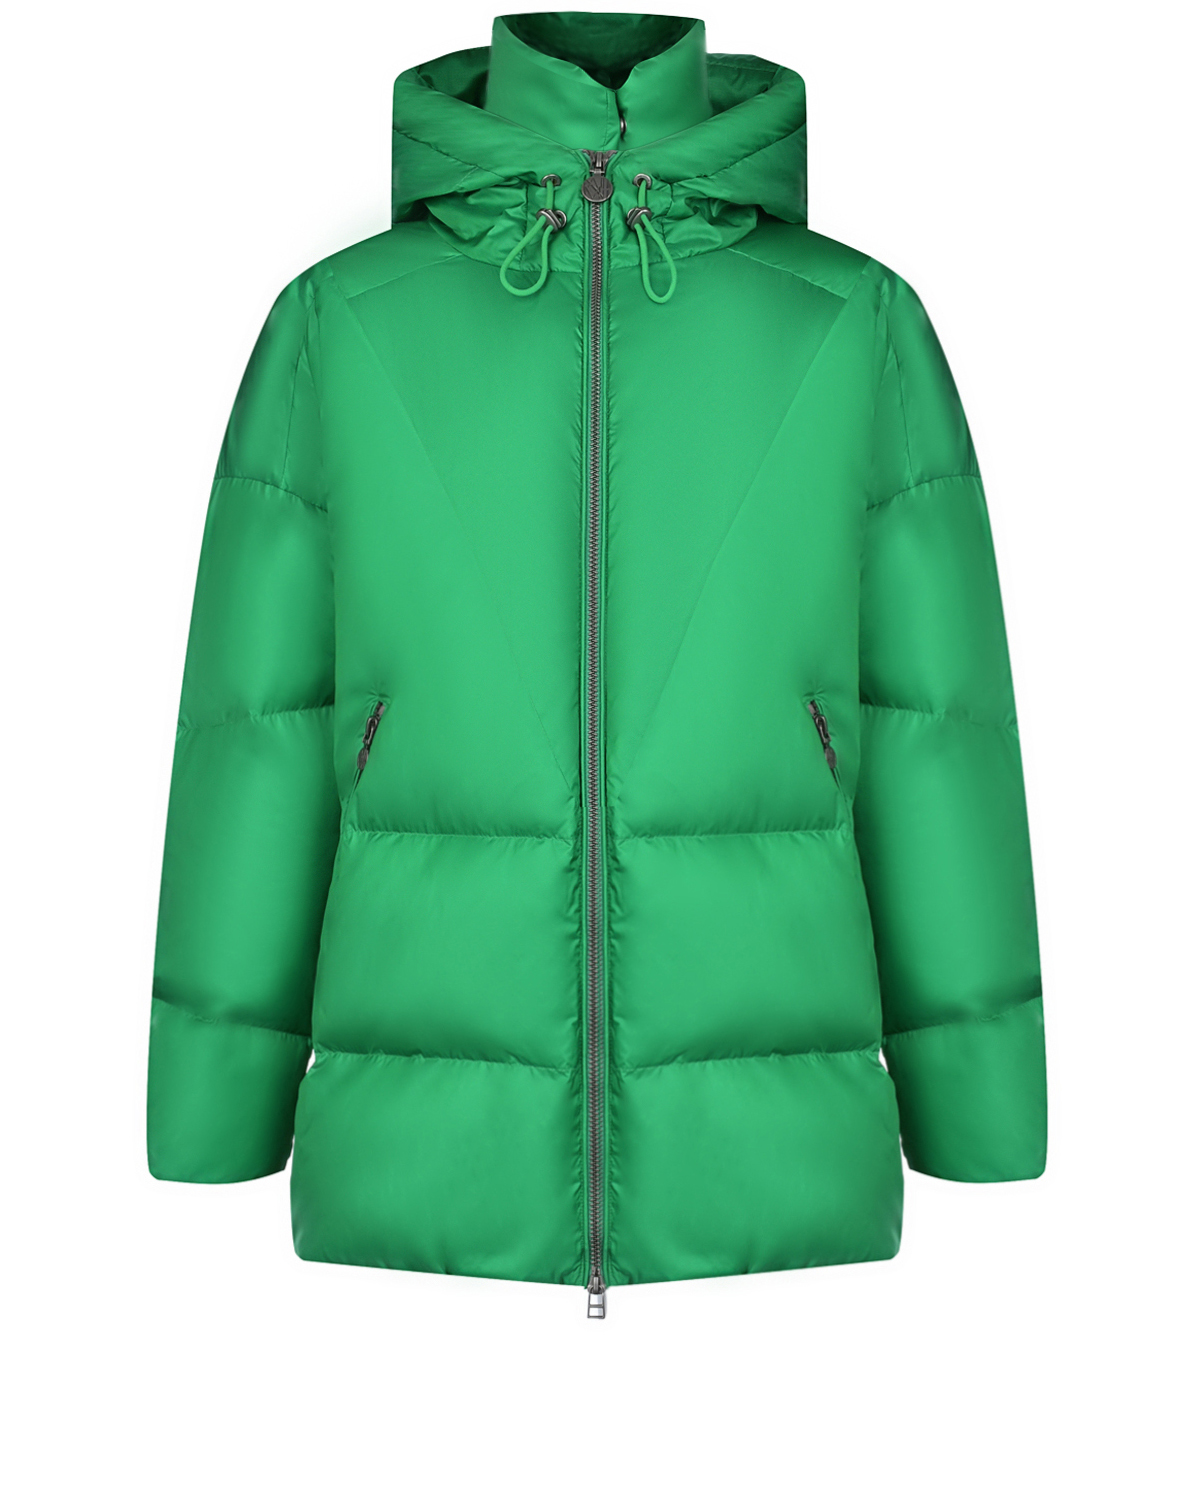 Удлиненная зеленая куртка с капюшоном Naumi, размер 36, цвет зеленый